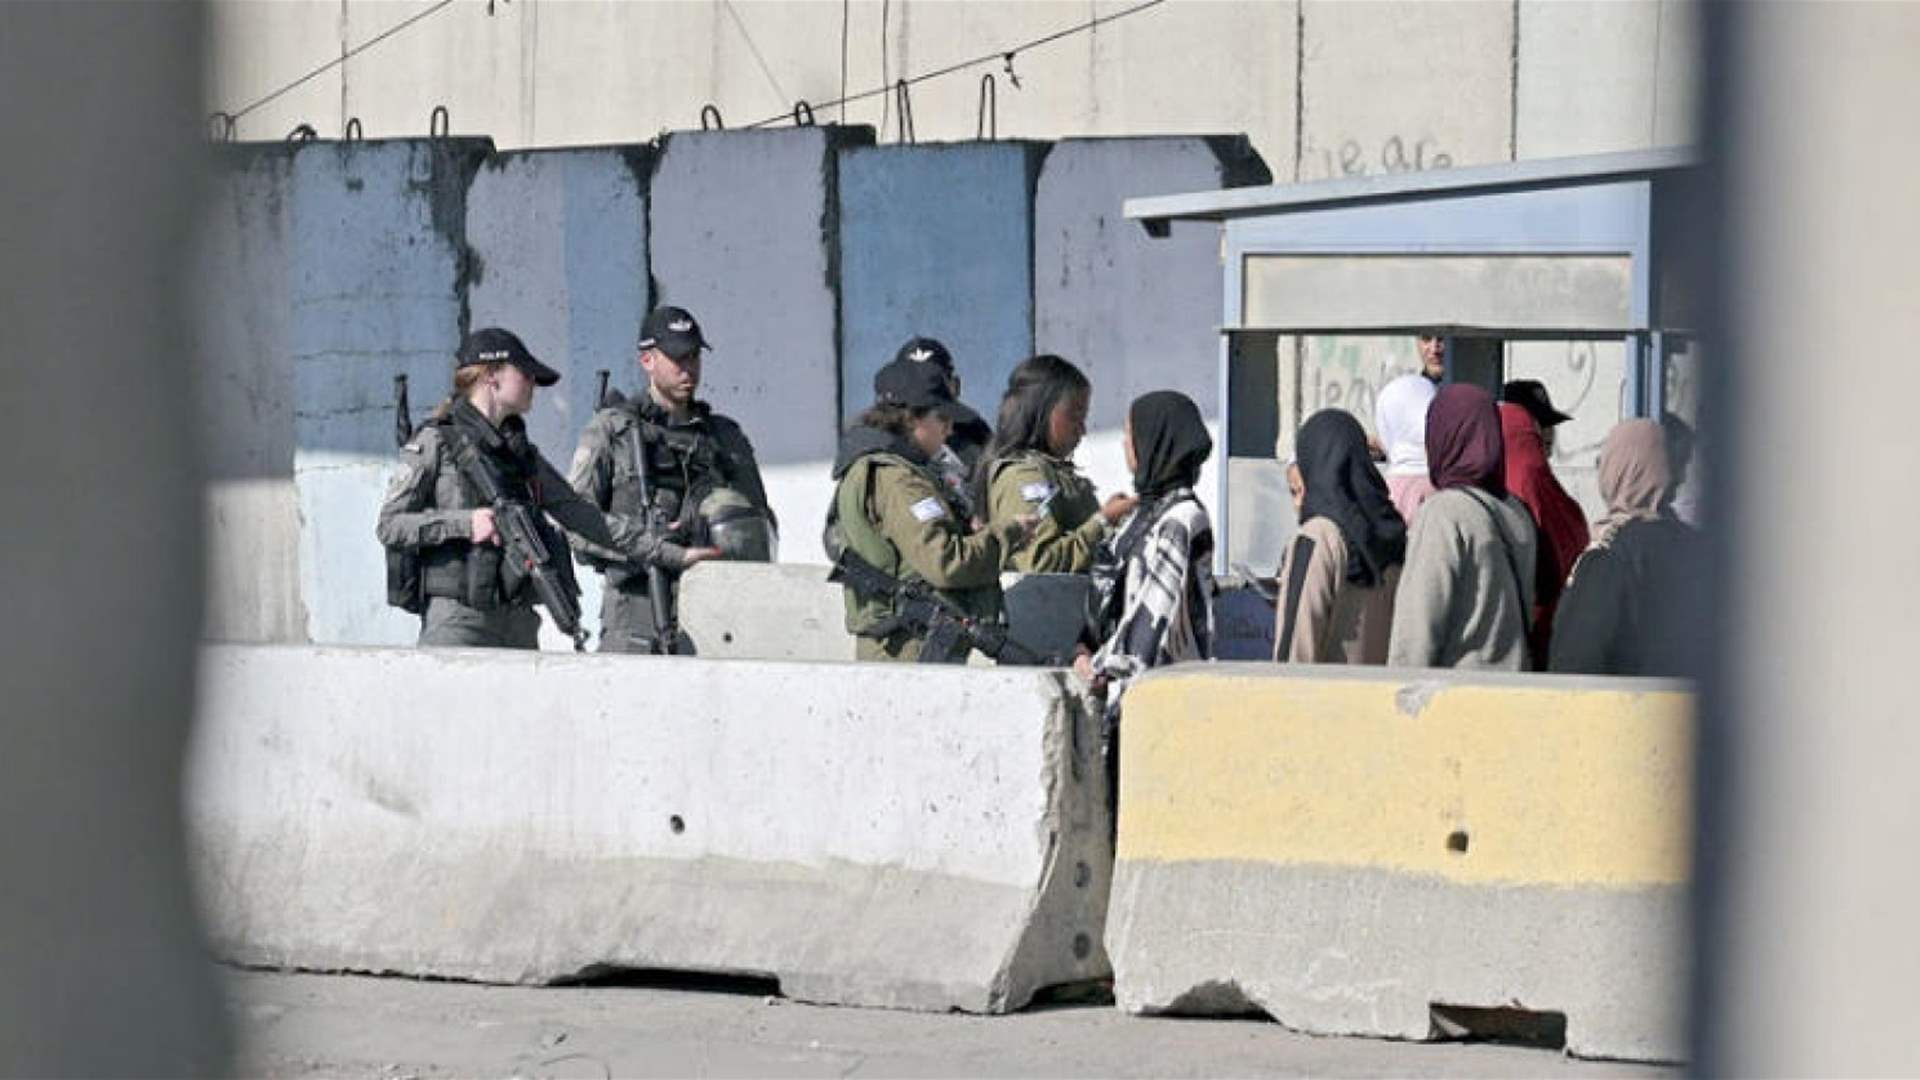  إسرائيل ستوقف تدريجيًا استخدام معسكر اعتقال يديره الجيش لفلسطينيين 